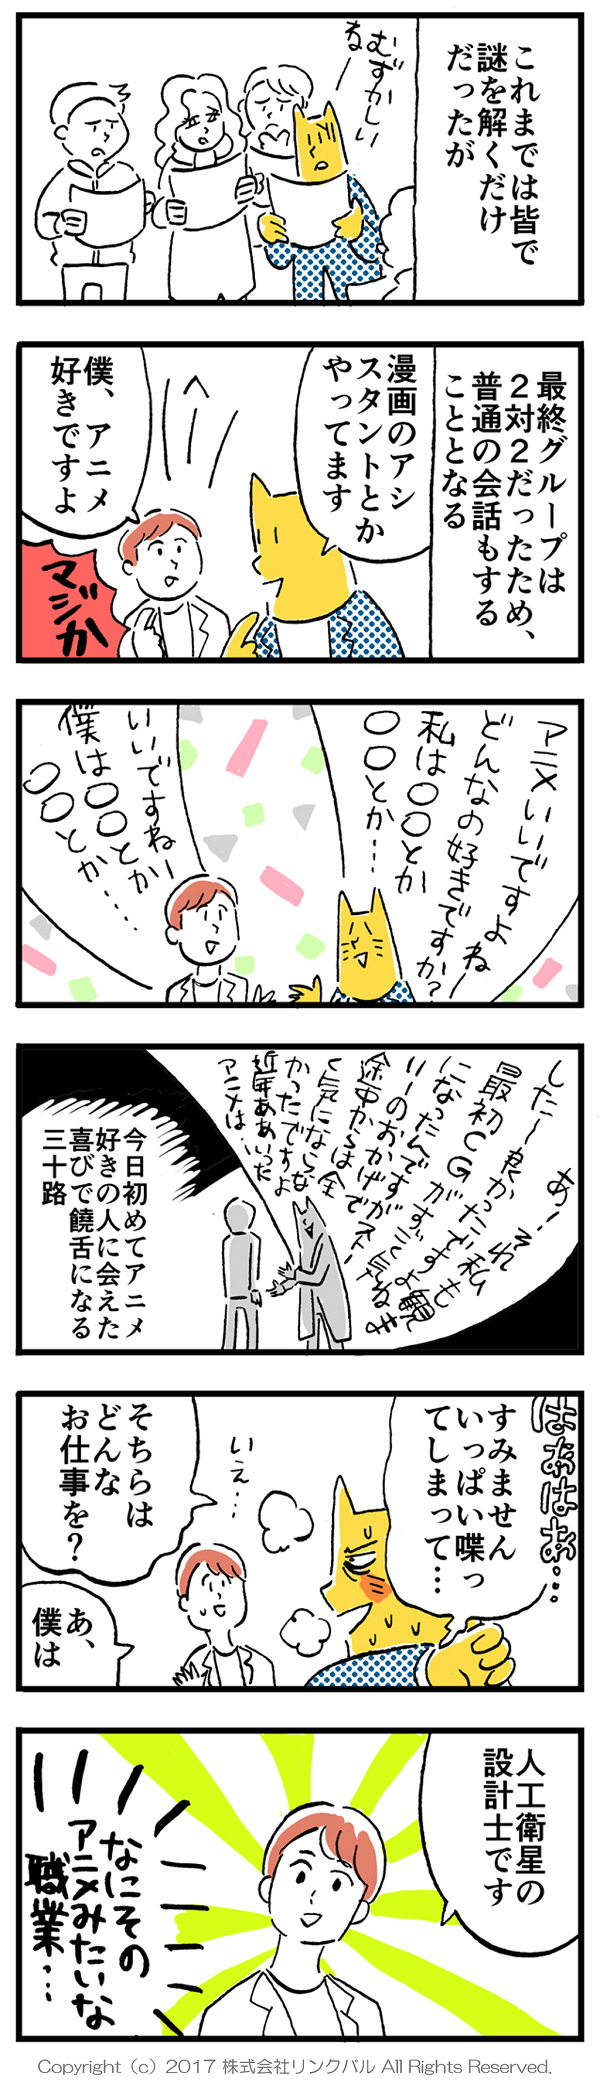 【婚活漫画】アラサー街コン物語・第15話「会話」